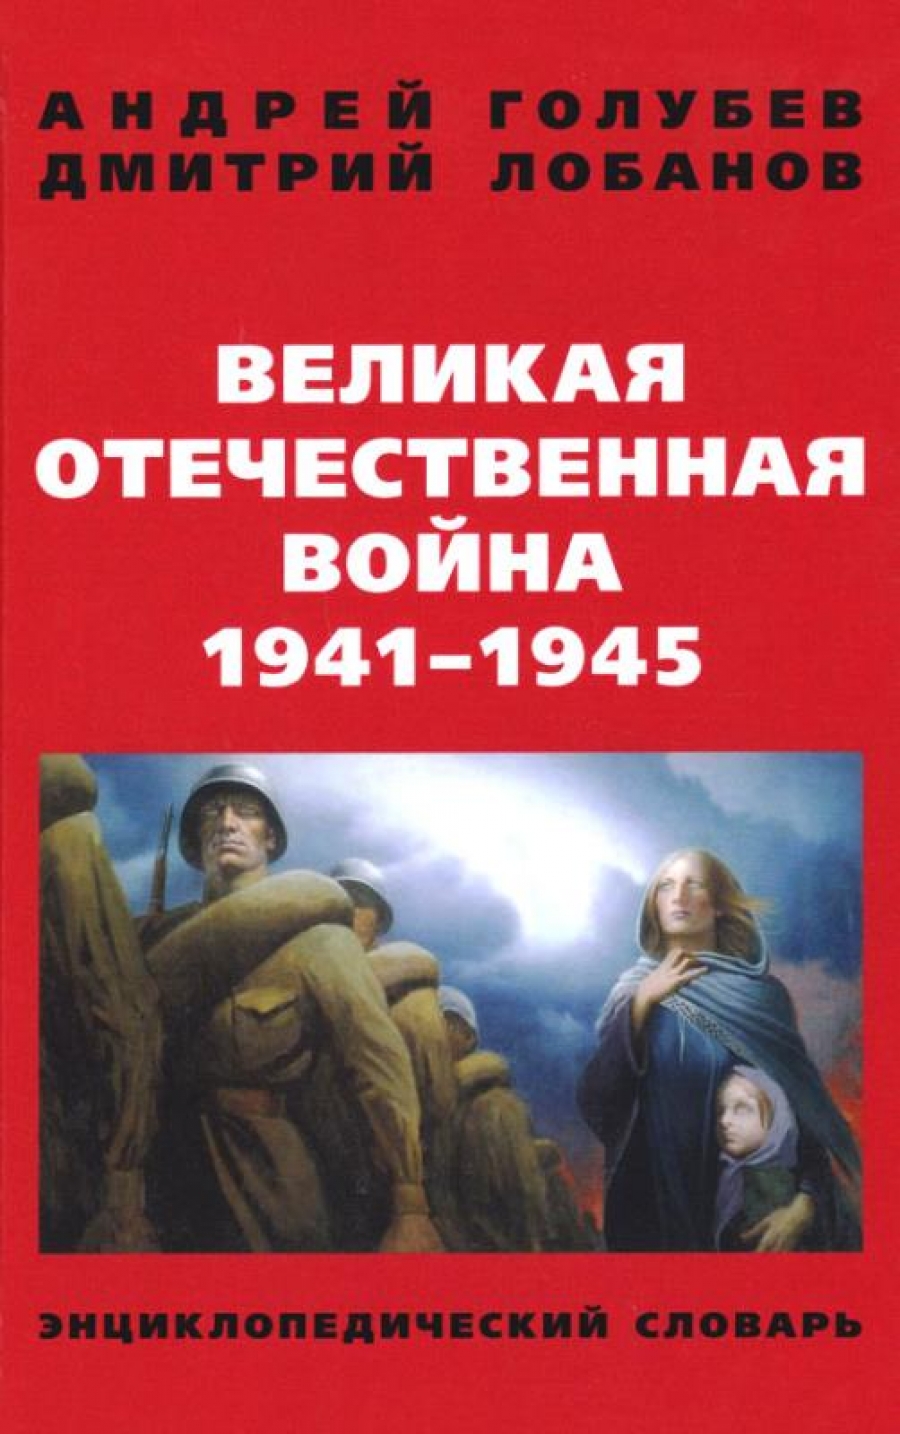    1941-1945  